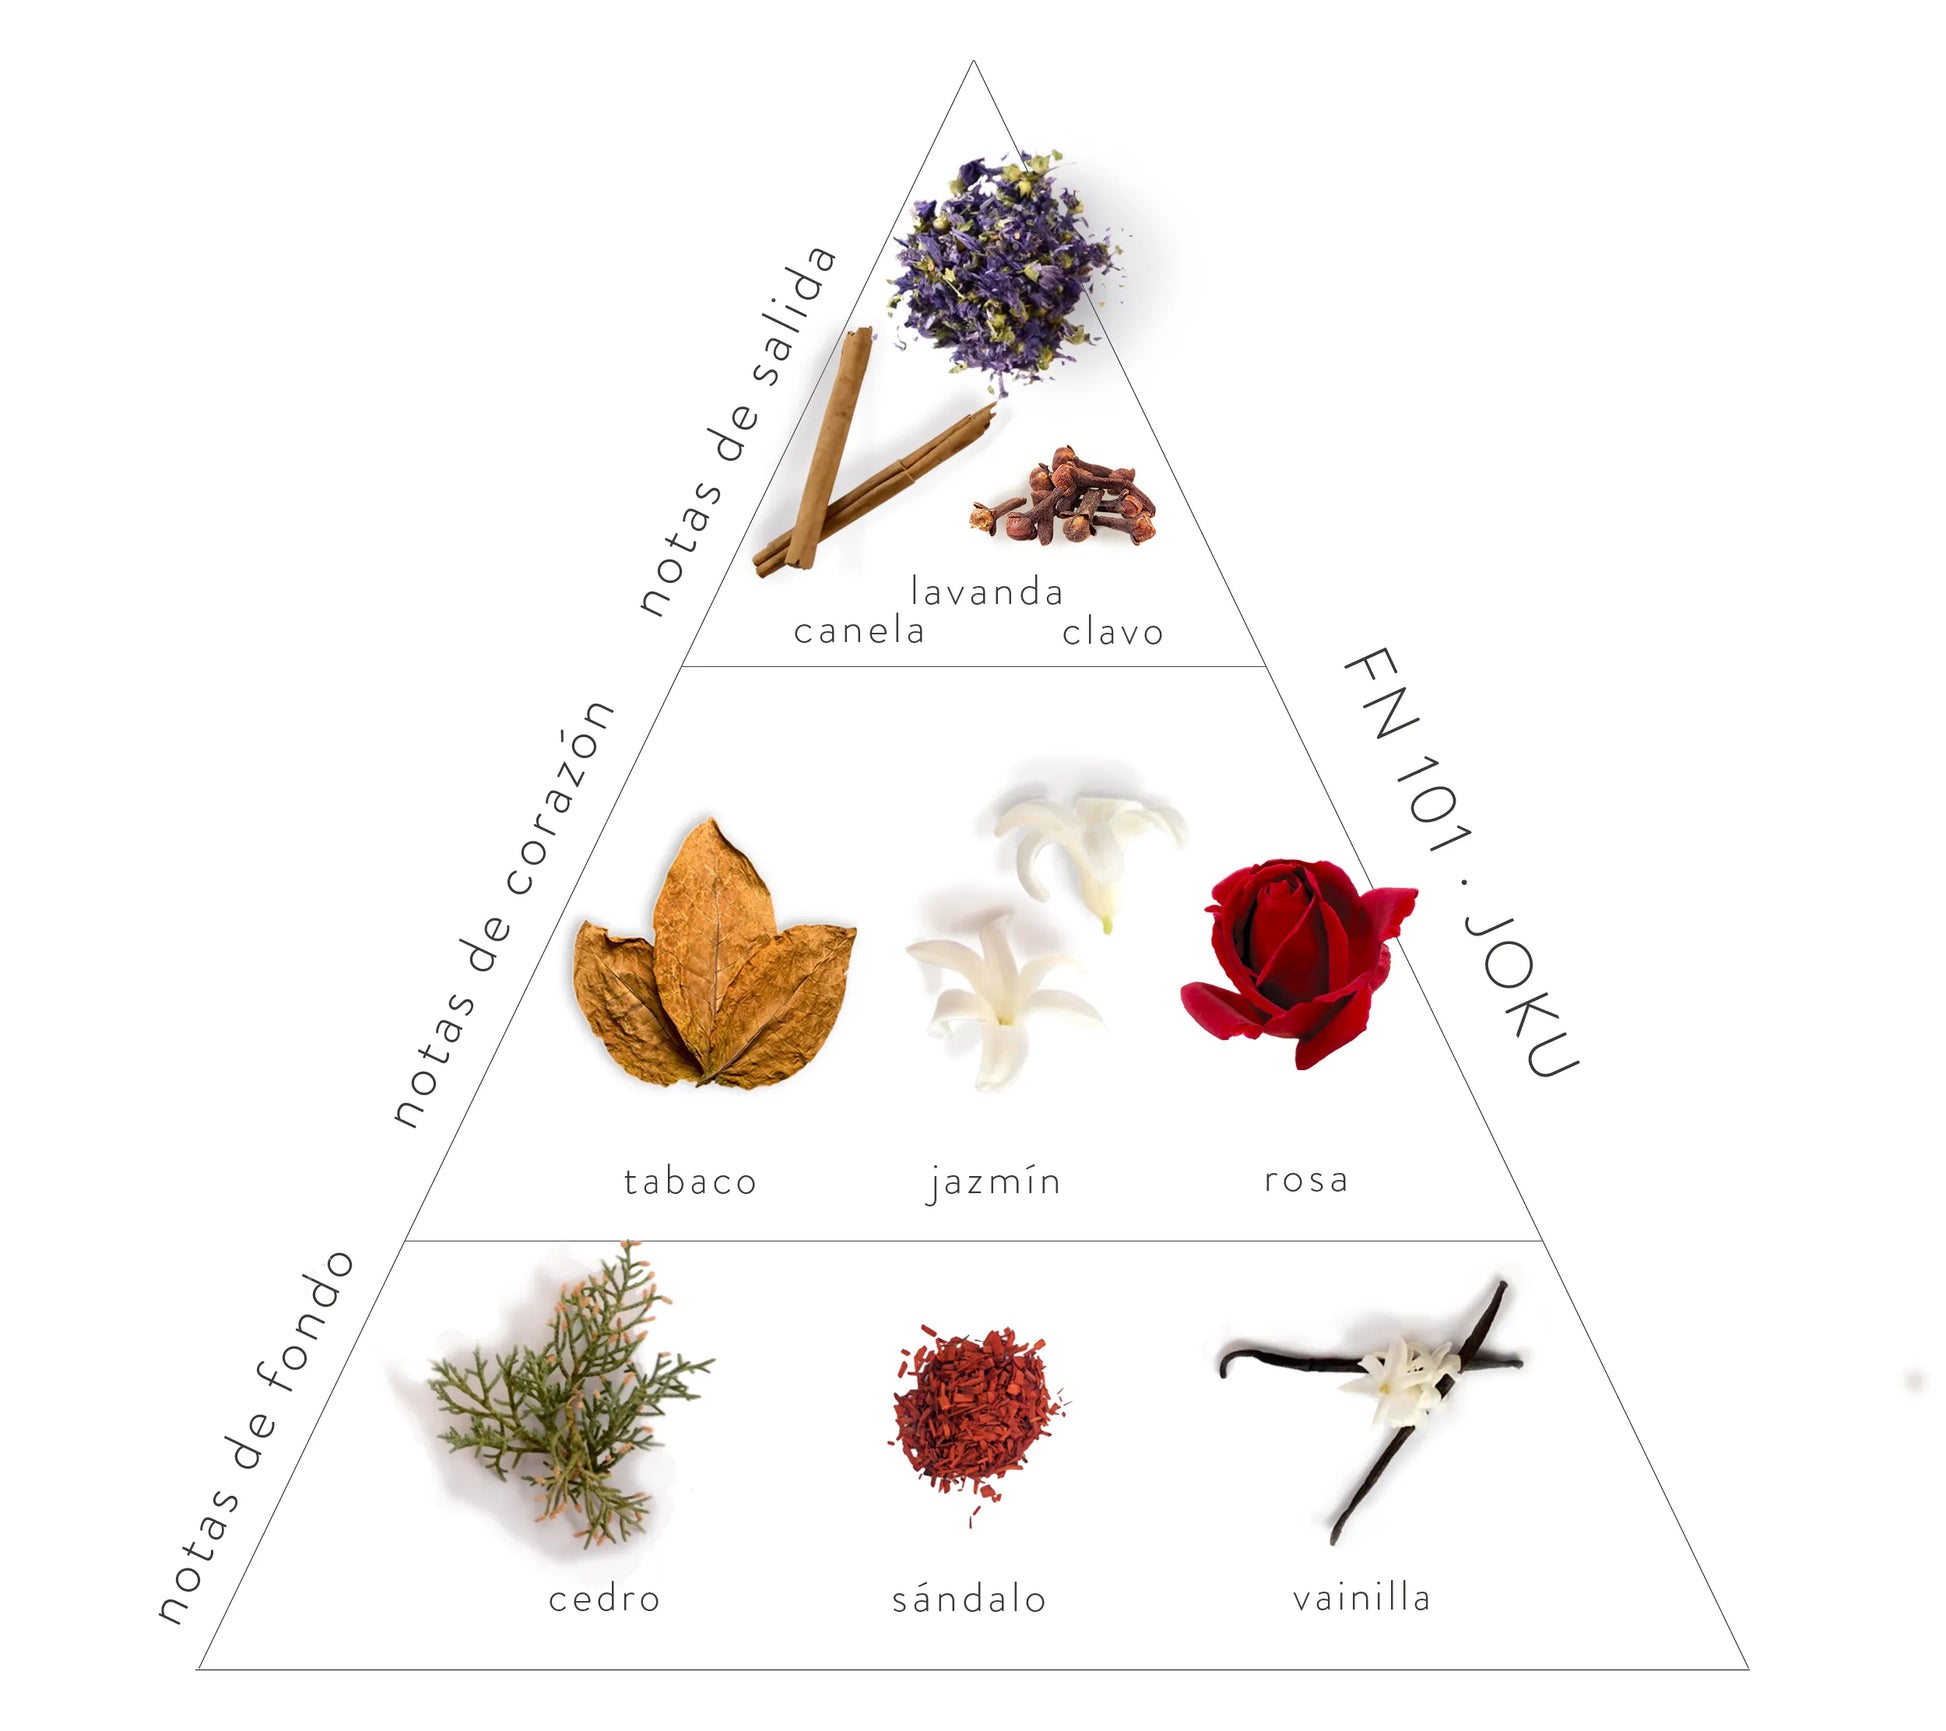 Pirámide Olfativa Joku: Notas de salida; canela, lavanda y clavo. Notas de corazón: tabaco, jazmín y rosa. Notas de fondo: cedro, sándalo y vainilla